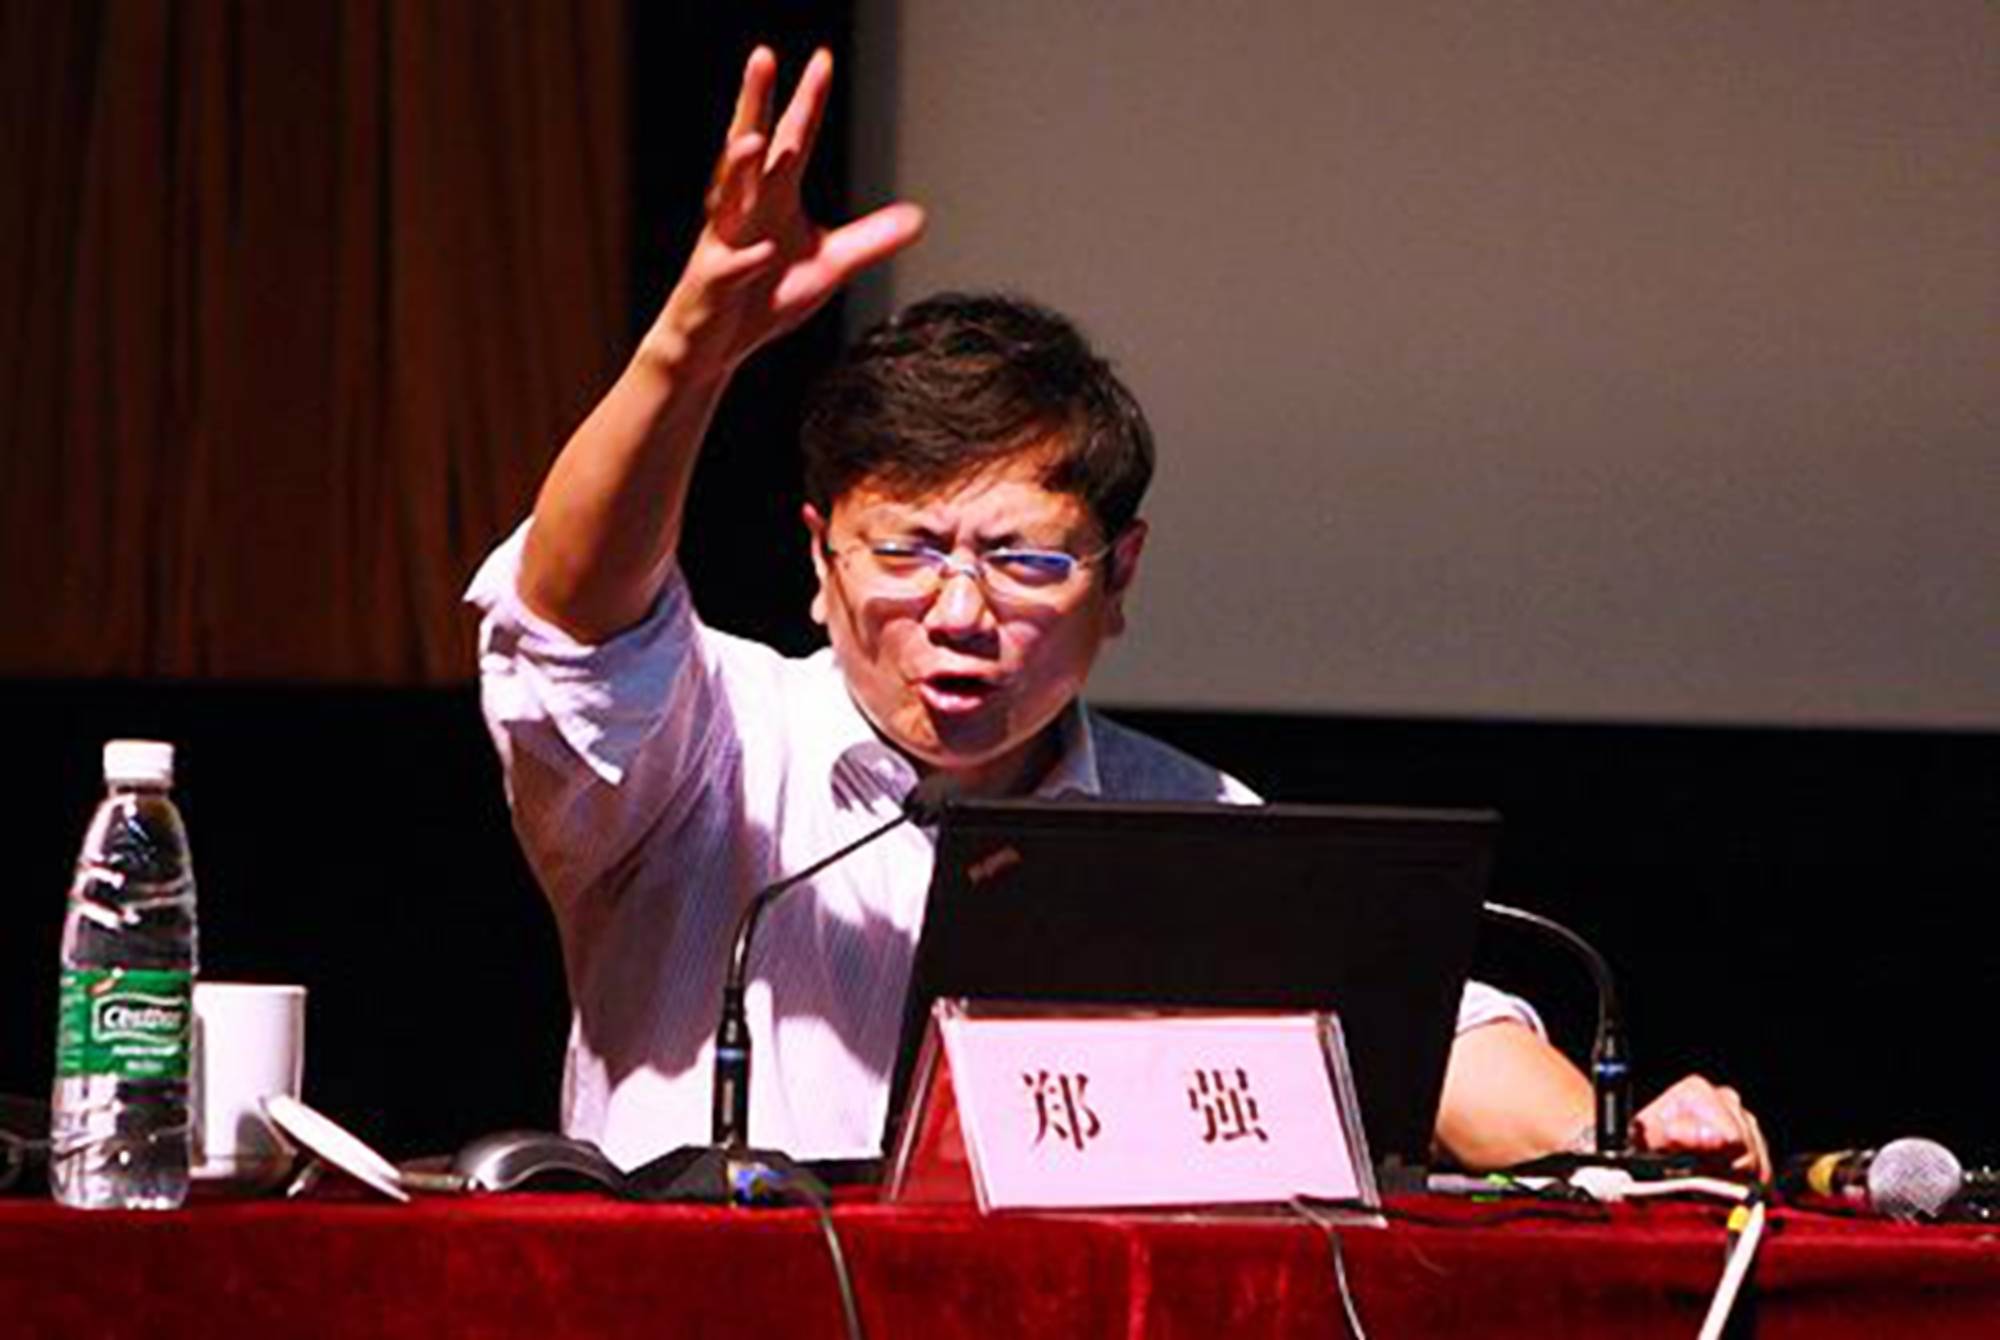 原创"网红教授"郑强坦言,儿子没出息曾被学校开除,事实却出人意料